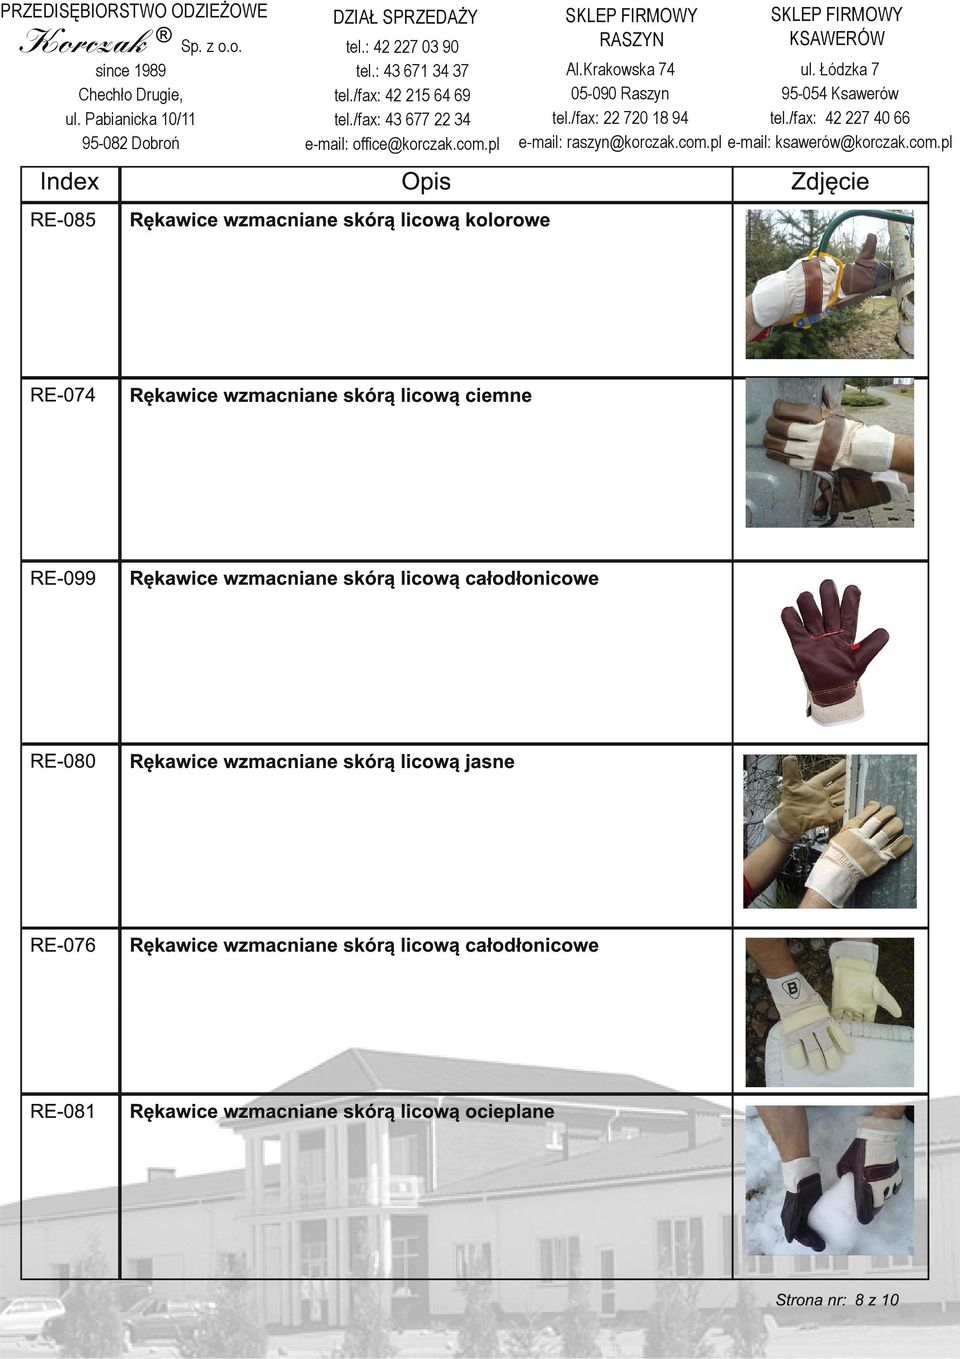 080 Rękawice wzmacniane skórą licową jasne RE 076 Rękawice wzmacniane skórą